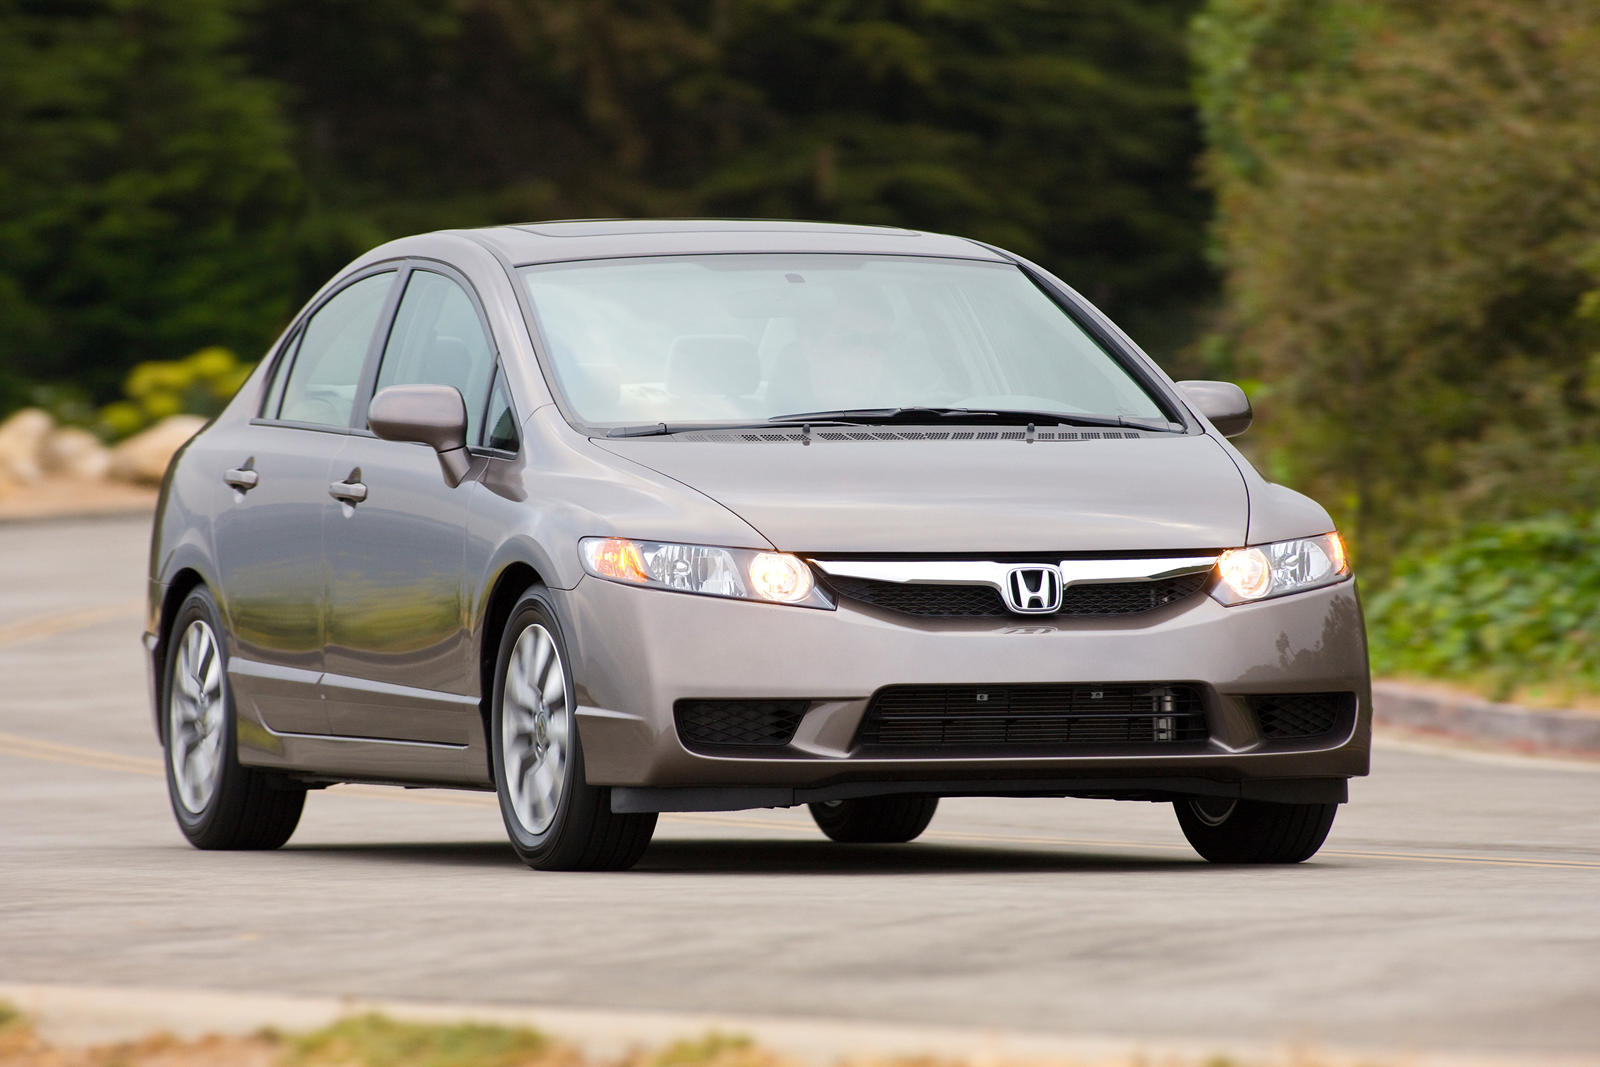 2009 Honda Civic Sedan Review Trims Specs Price New Interior 